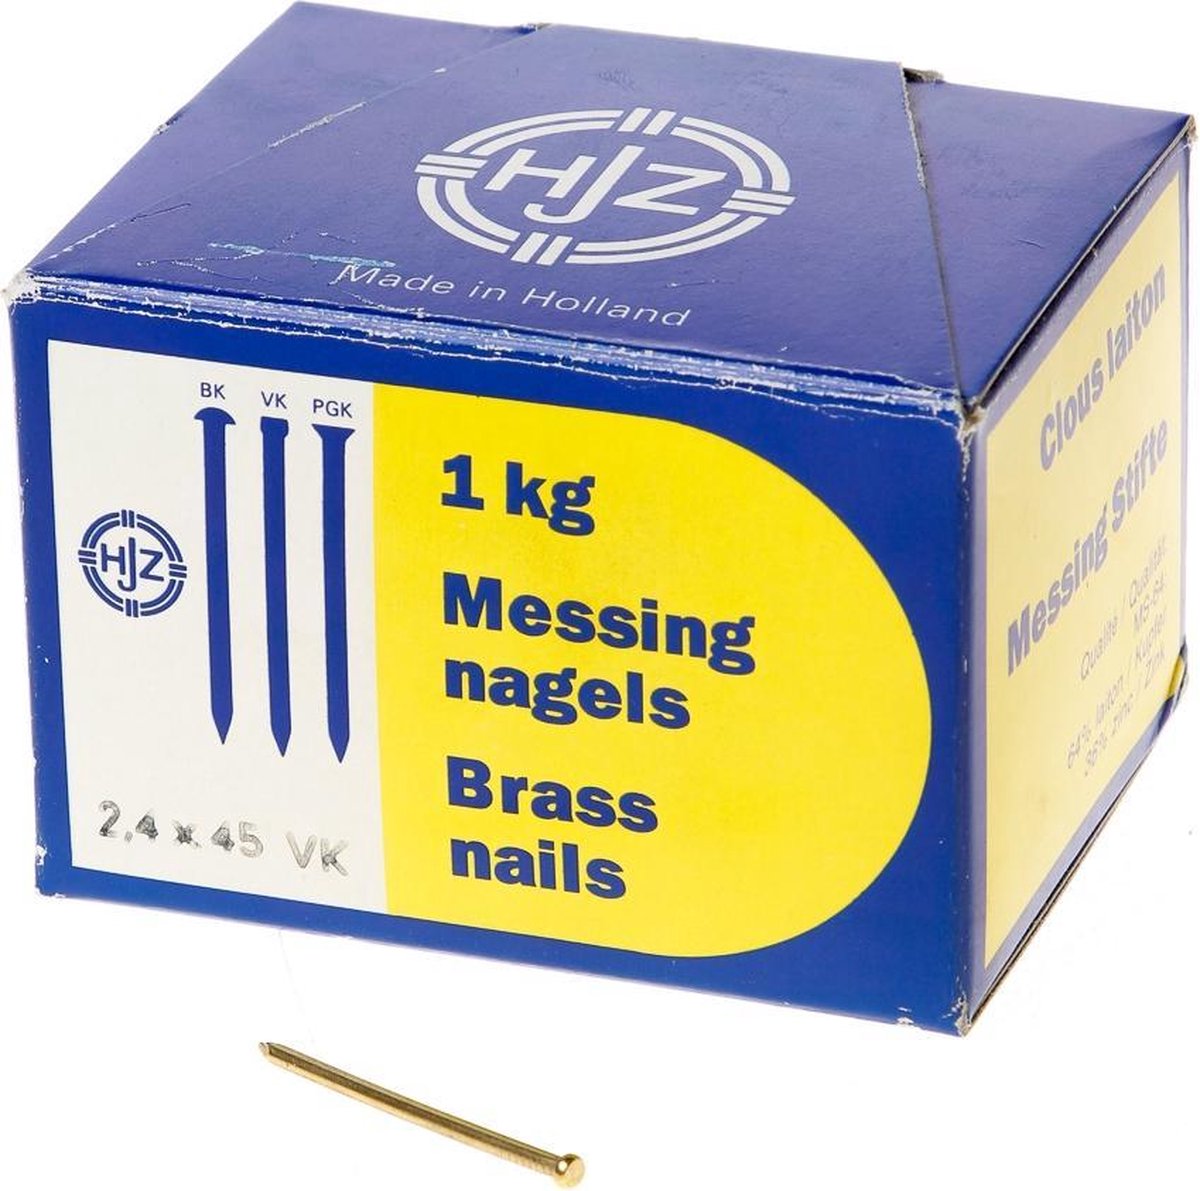 Hjz Messing nagels verloren kop 2.4 x 45mm 1kg